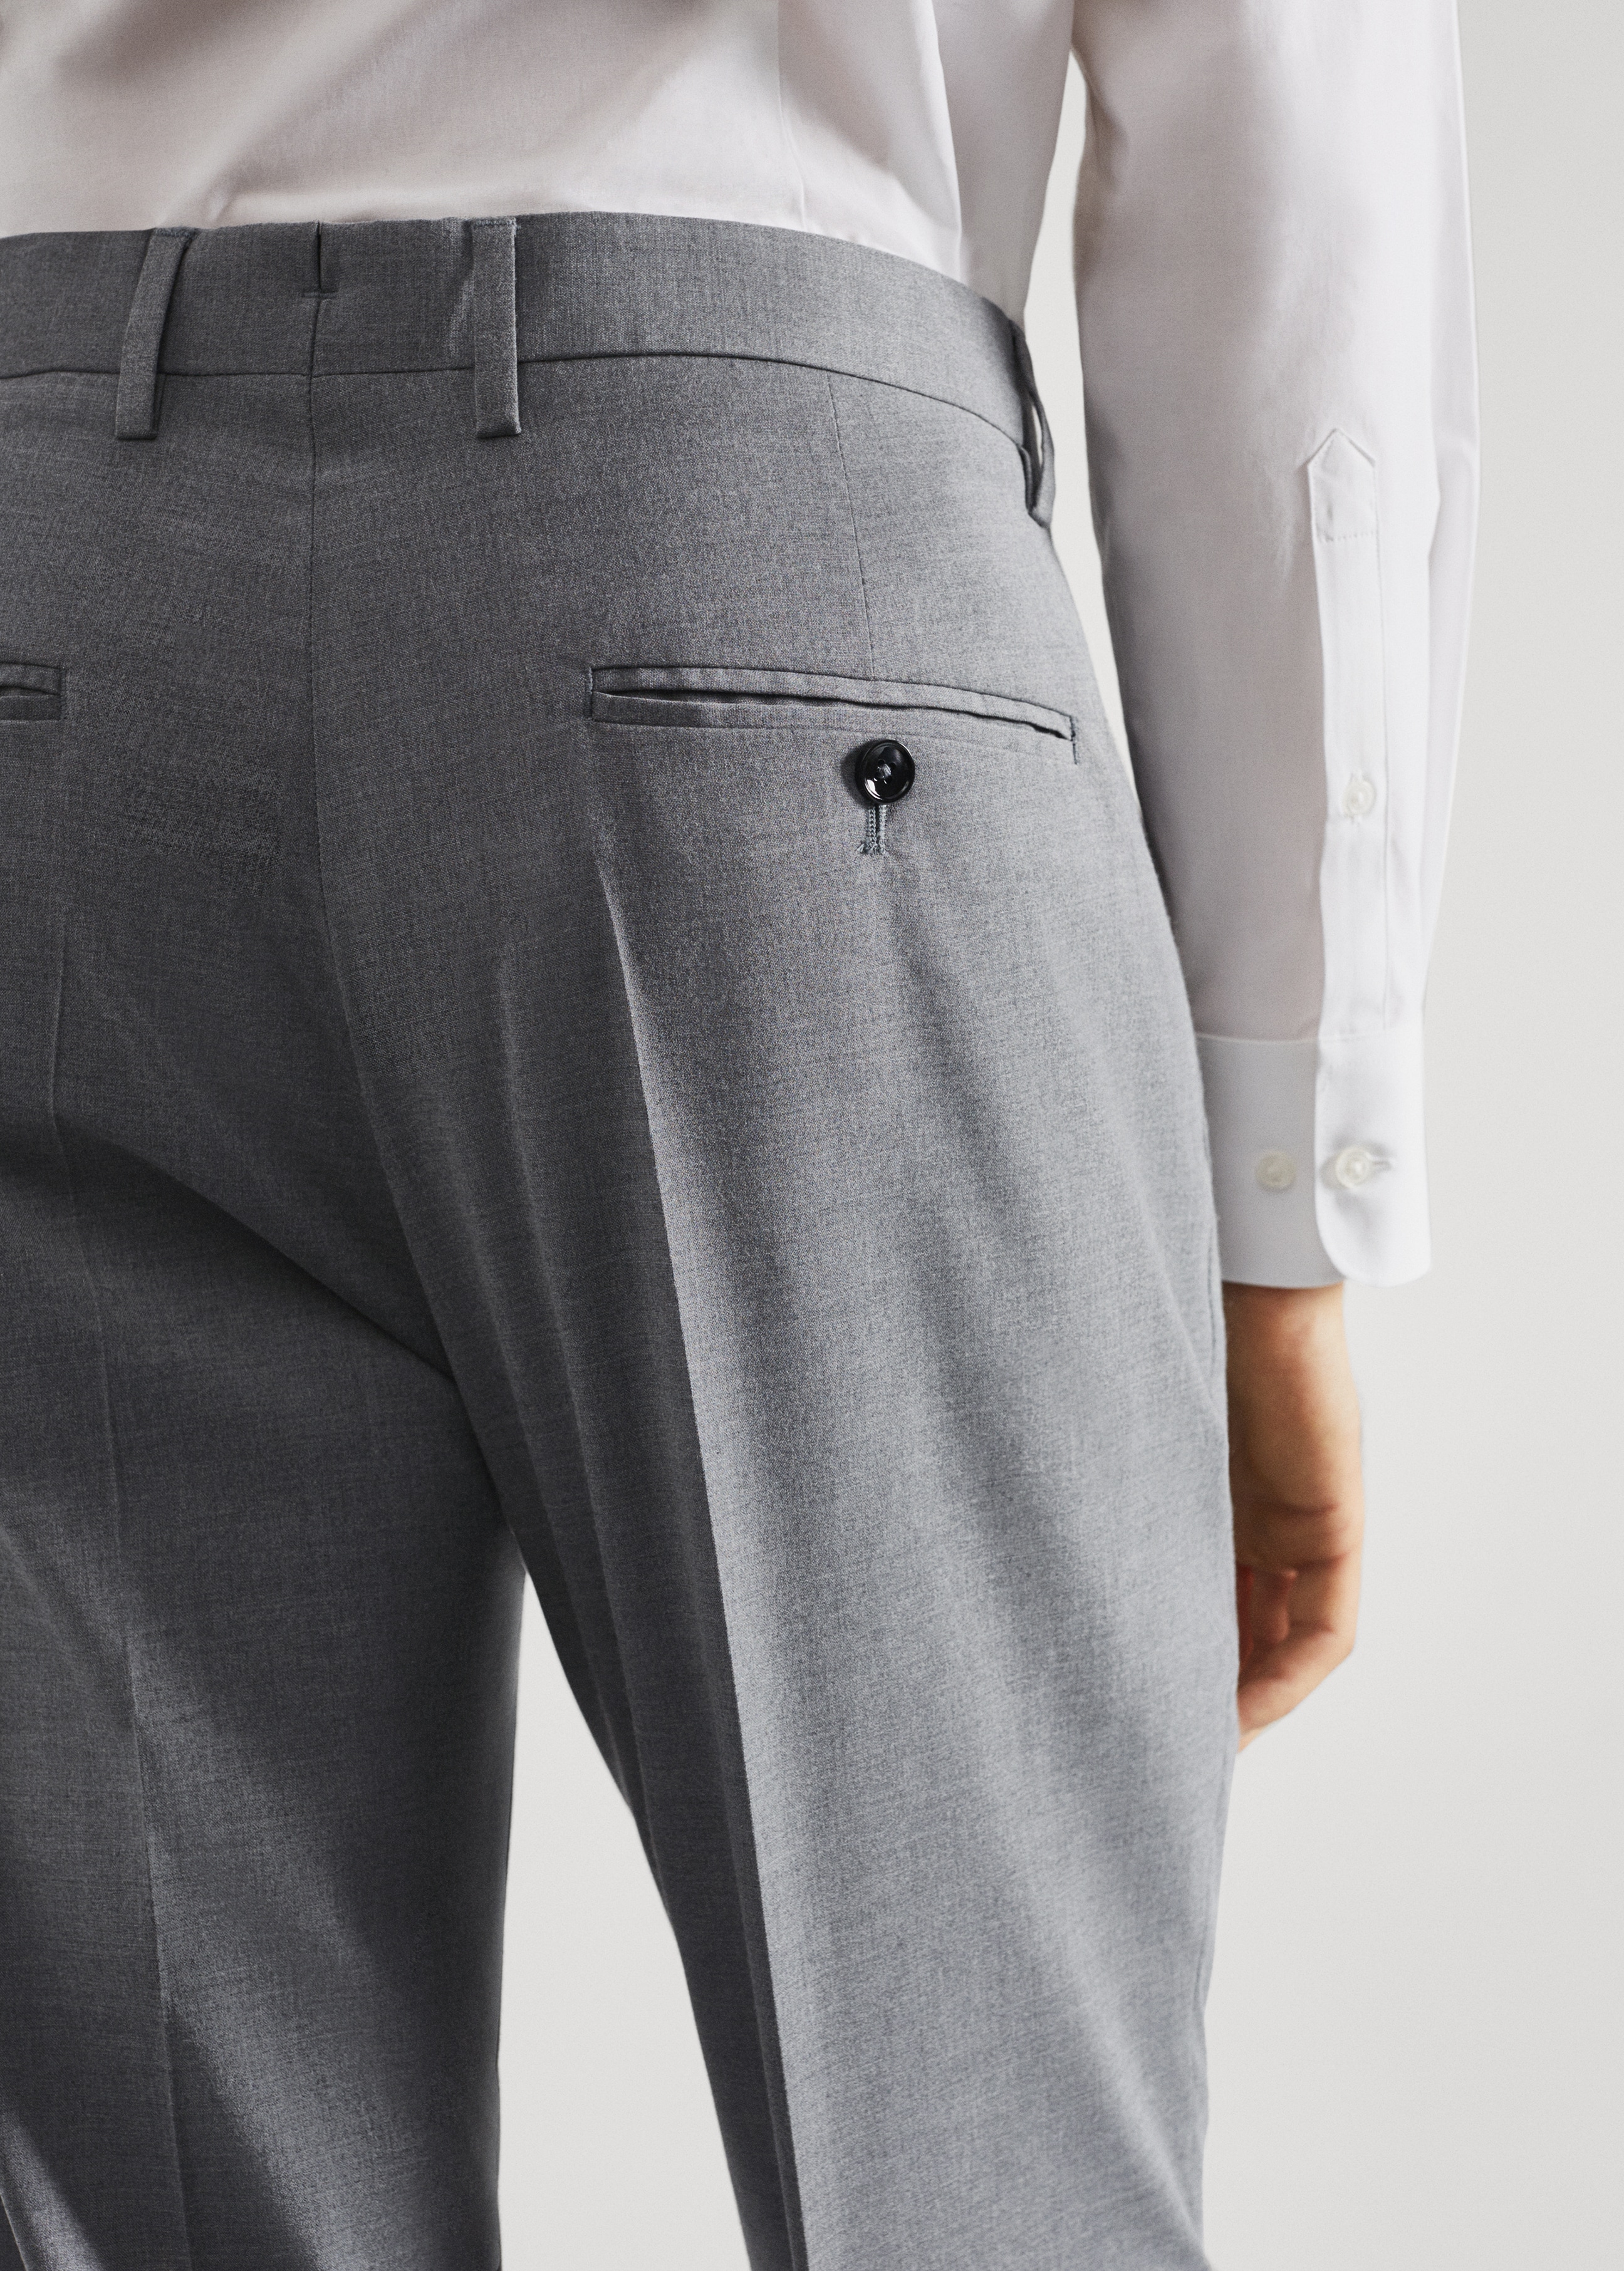 Pantalón traje slim fit cuadros - Detalle del artículo 4